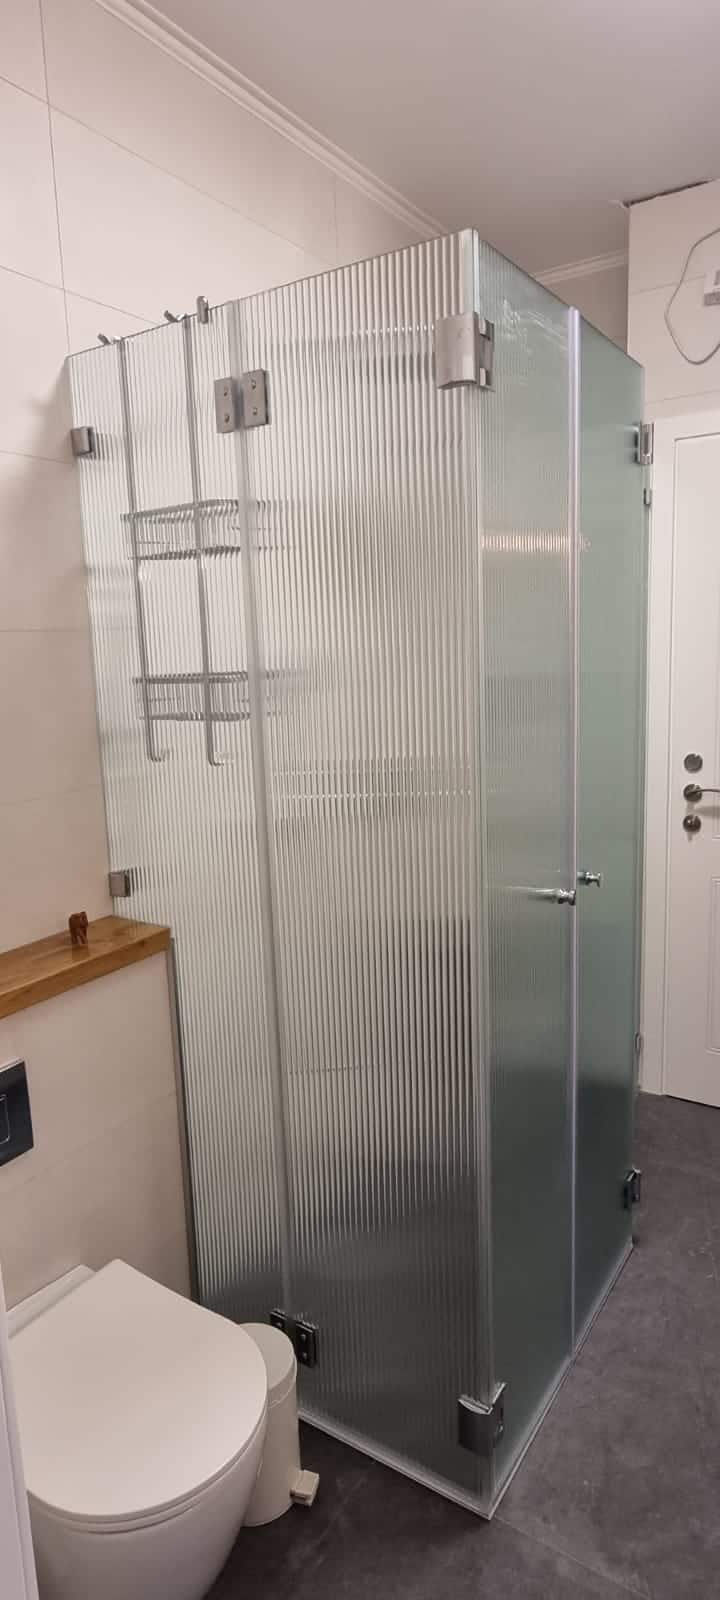 עבודות מקלחונים של זכוכית 2000!